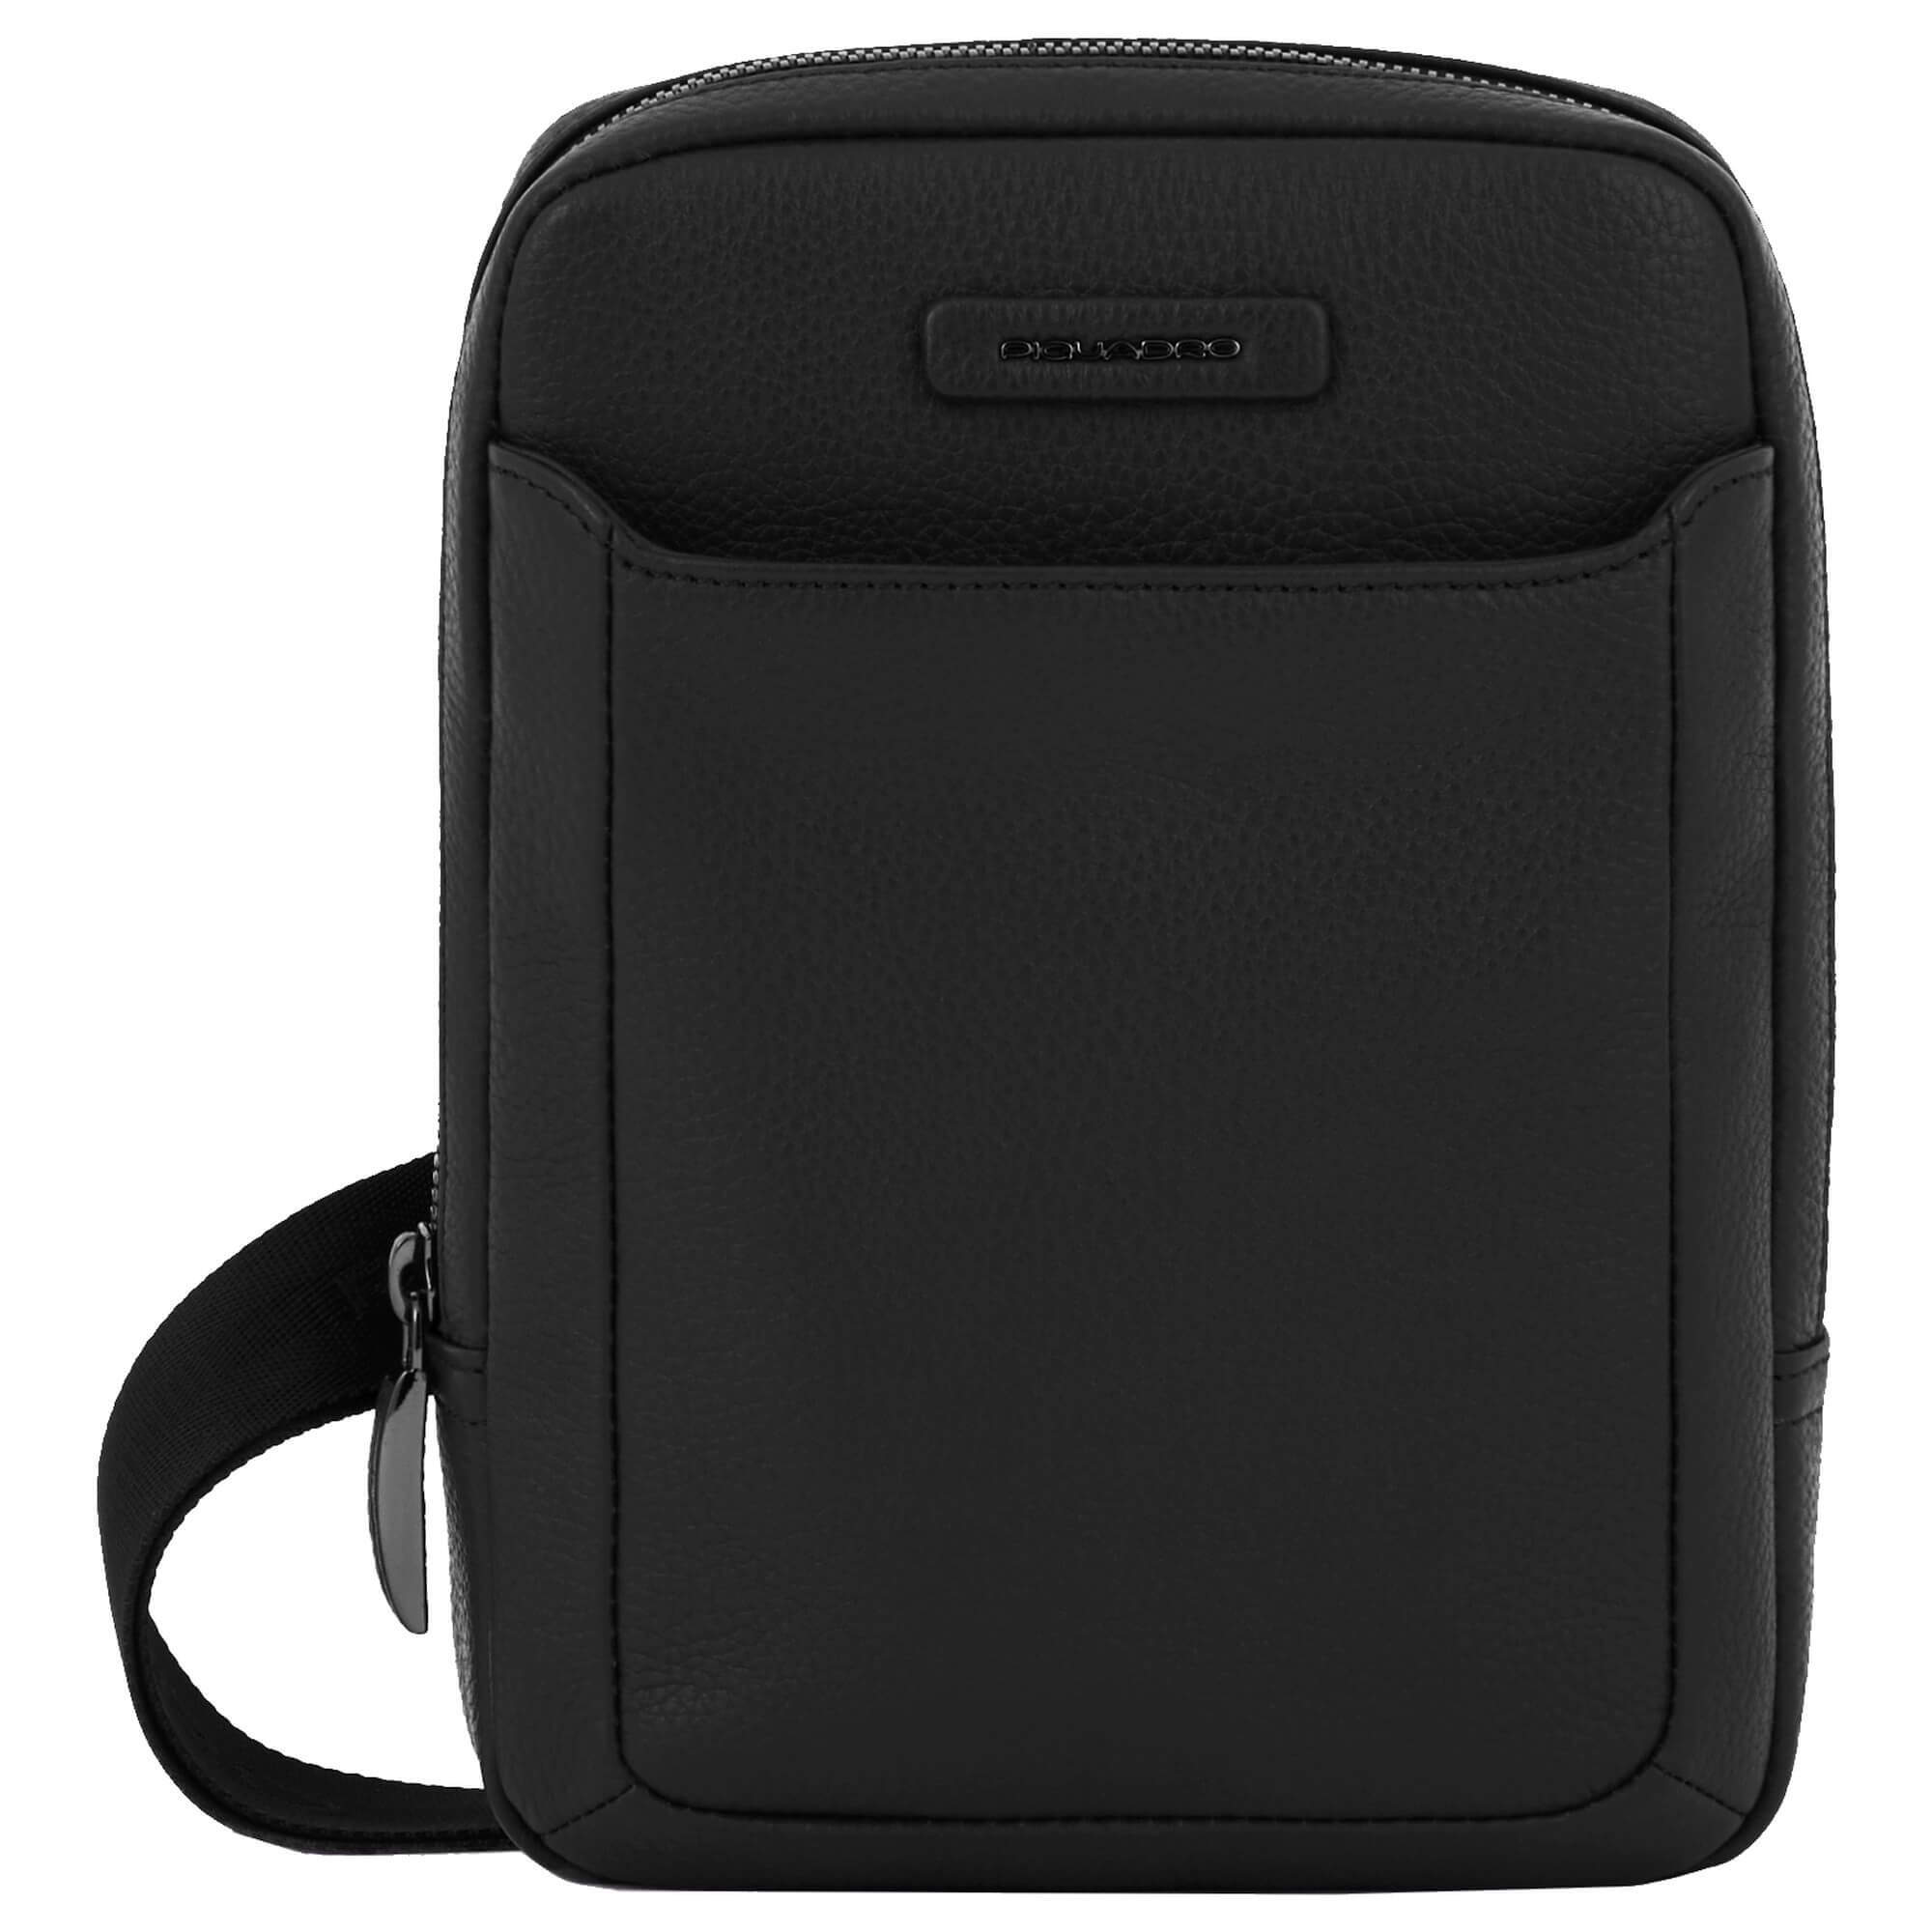 Сумка через плечо Piquadro Modus 2 - 22 см, черный рюкзак piquadro modus special ca3214mos n черный натур кожа